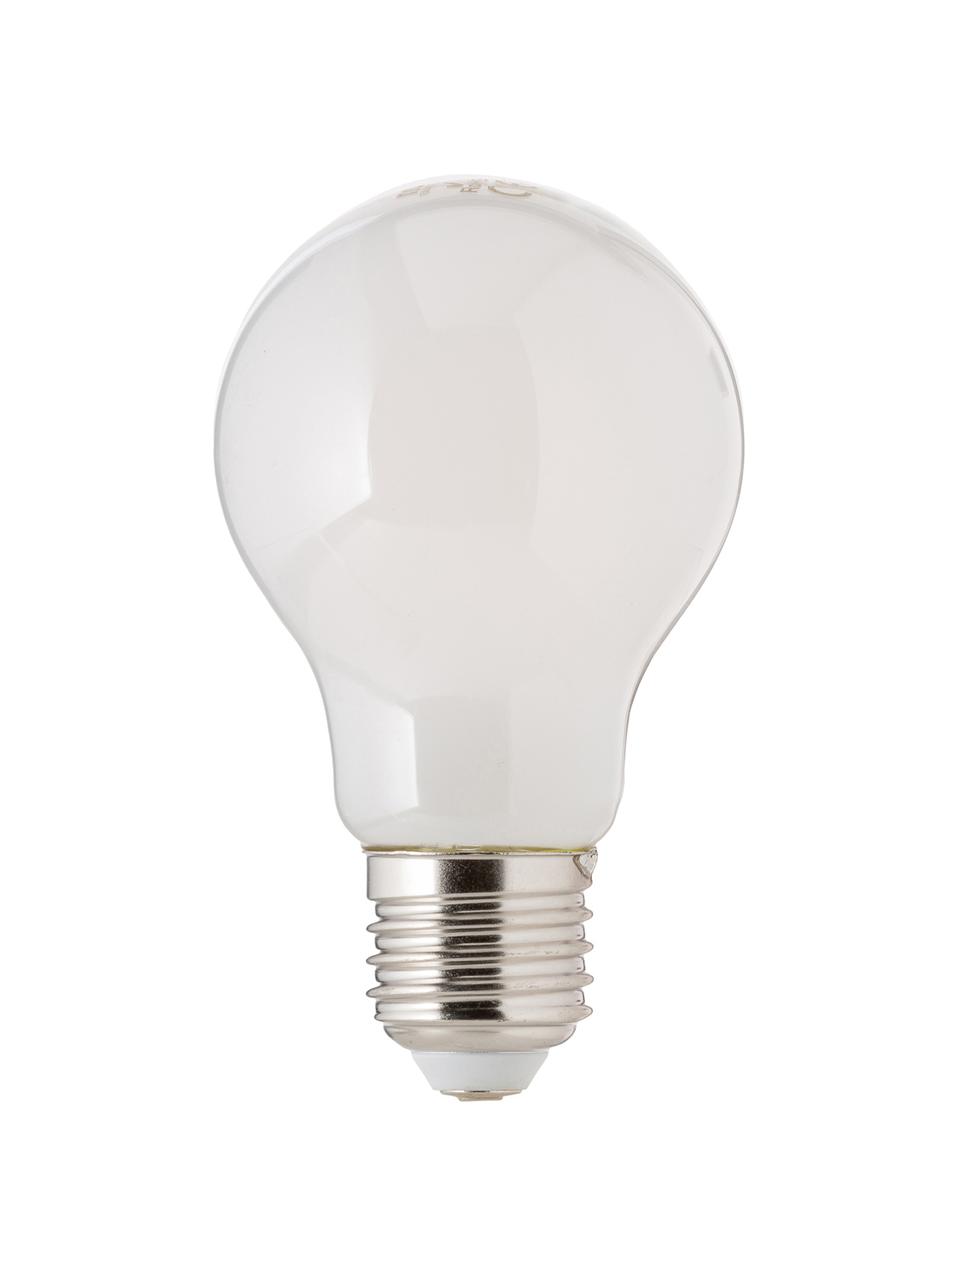 Żarówka LED z funkcją przyciemniania E27/806 lm, ciepła biel, 1 szt., Biały, Ø 8 x W 10 cm